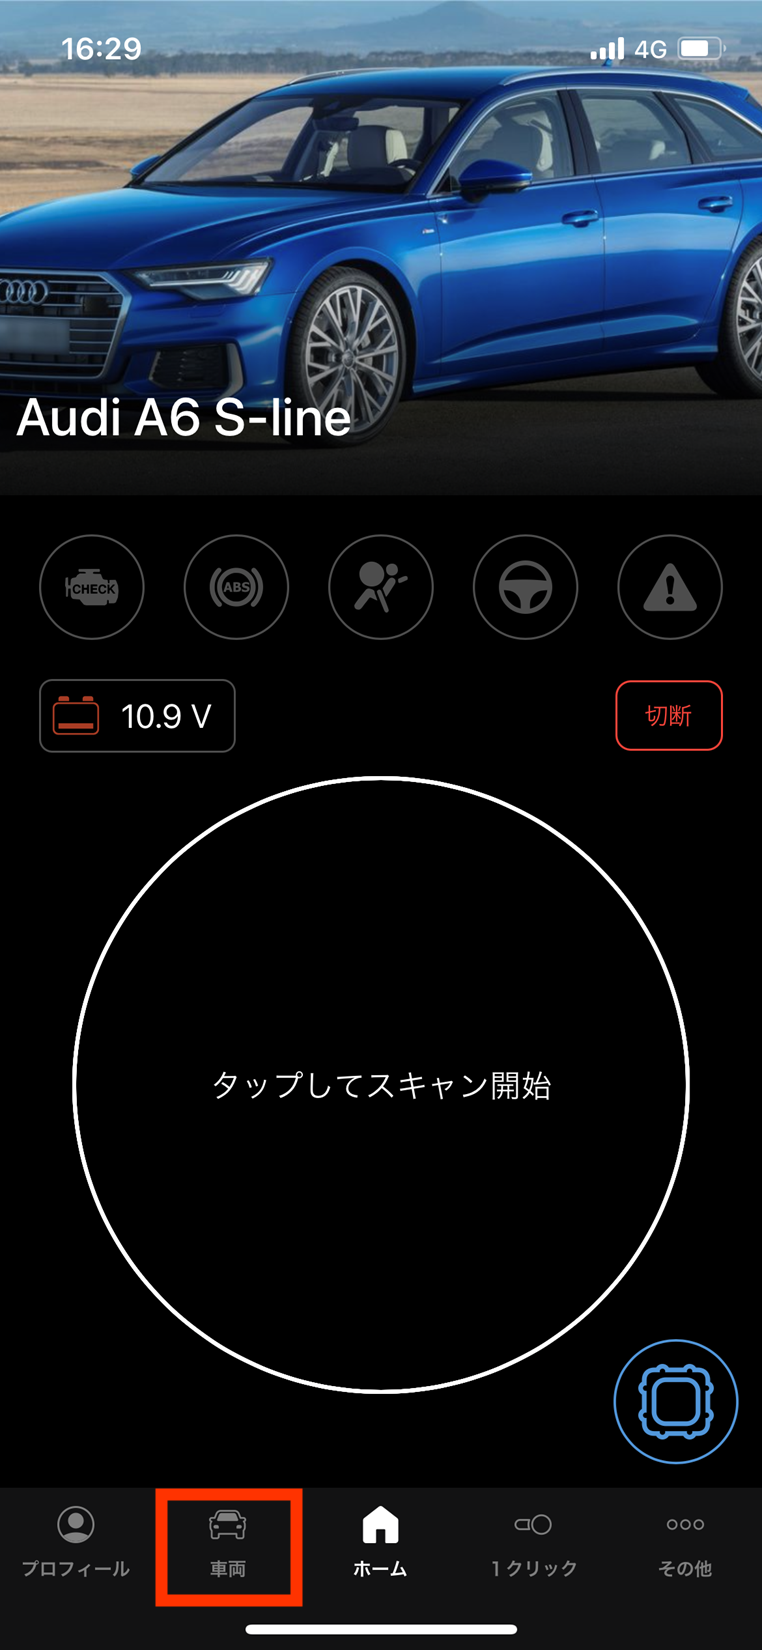 クイックマニュアル for iOS – OBDeleven JAPAN サポート